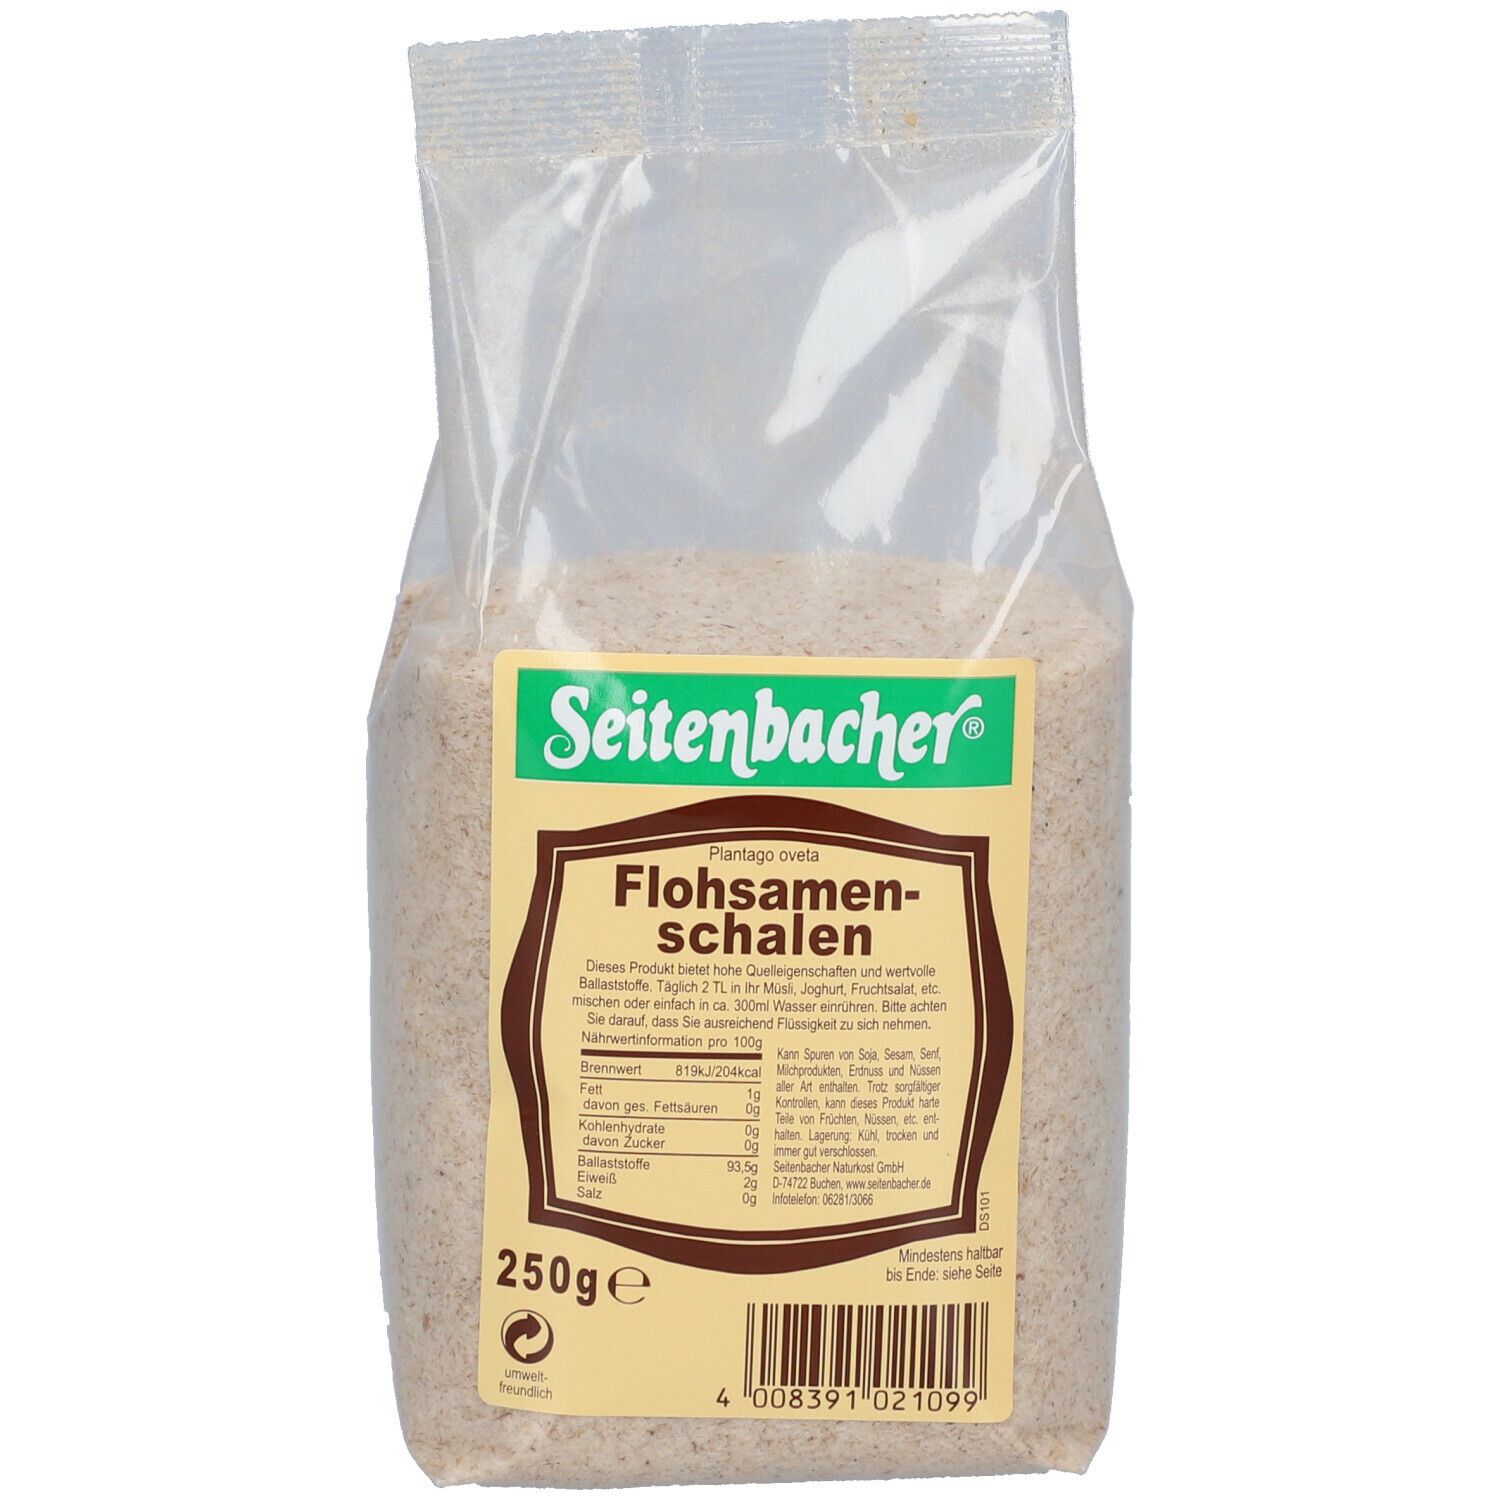 Seitenbacher® Flohsamenschalen